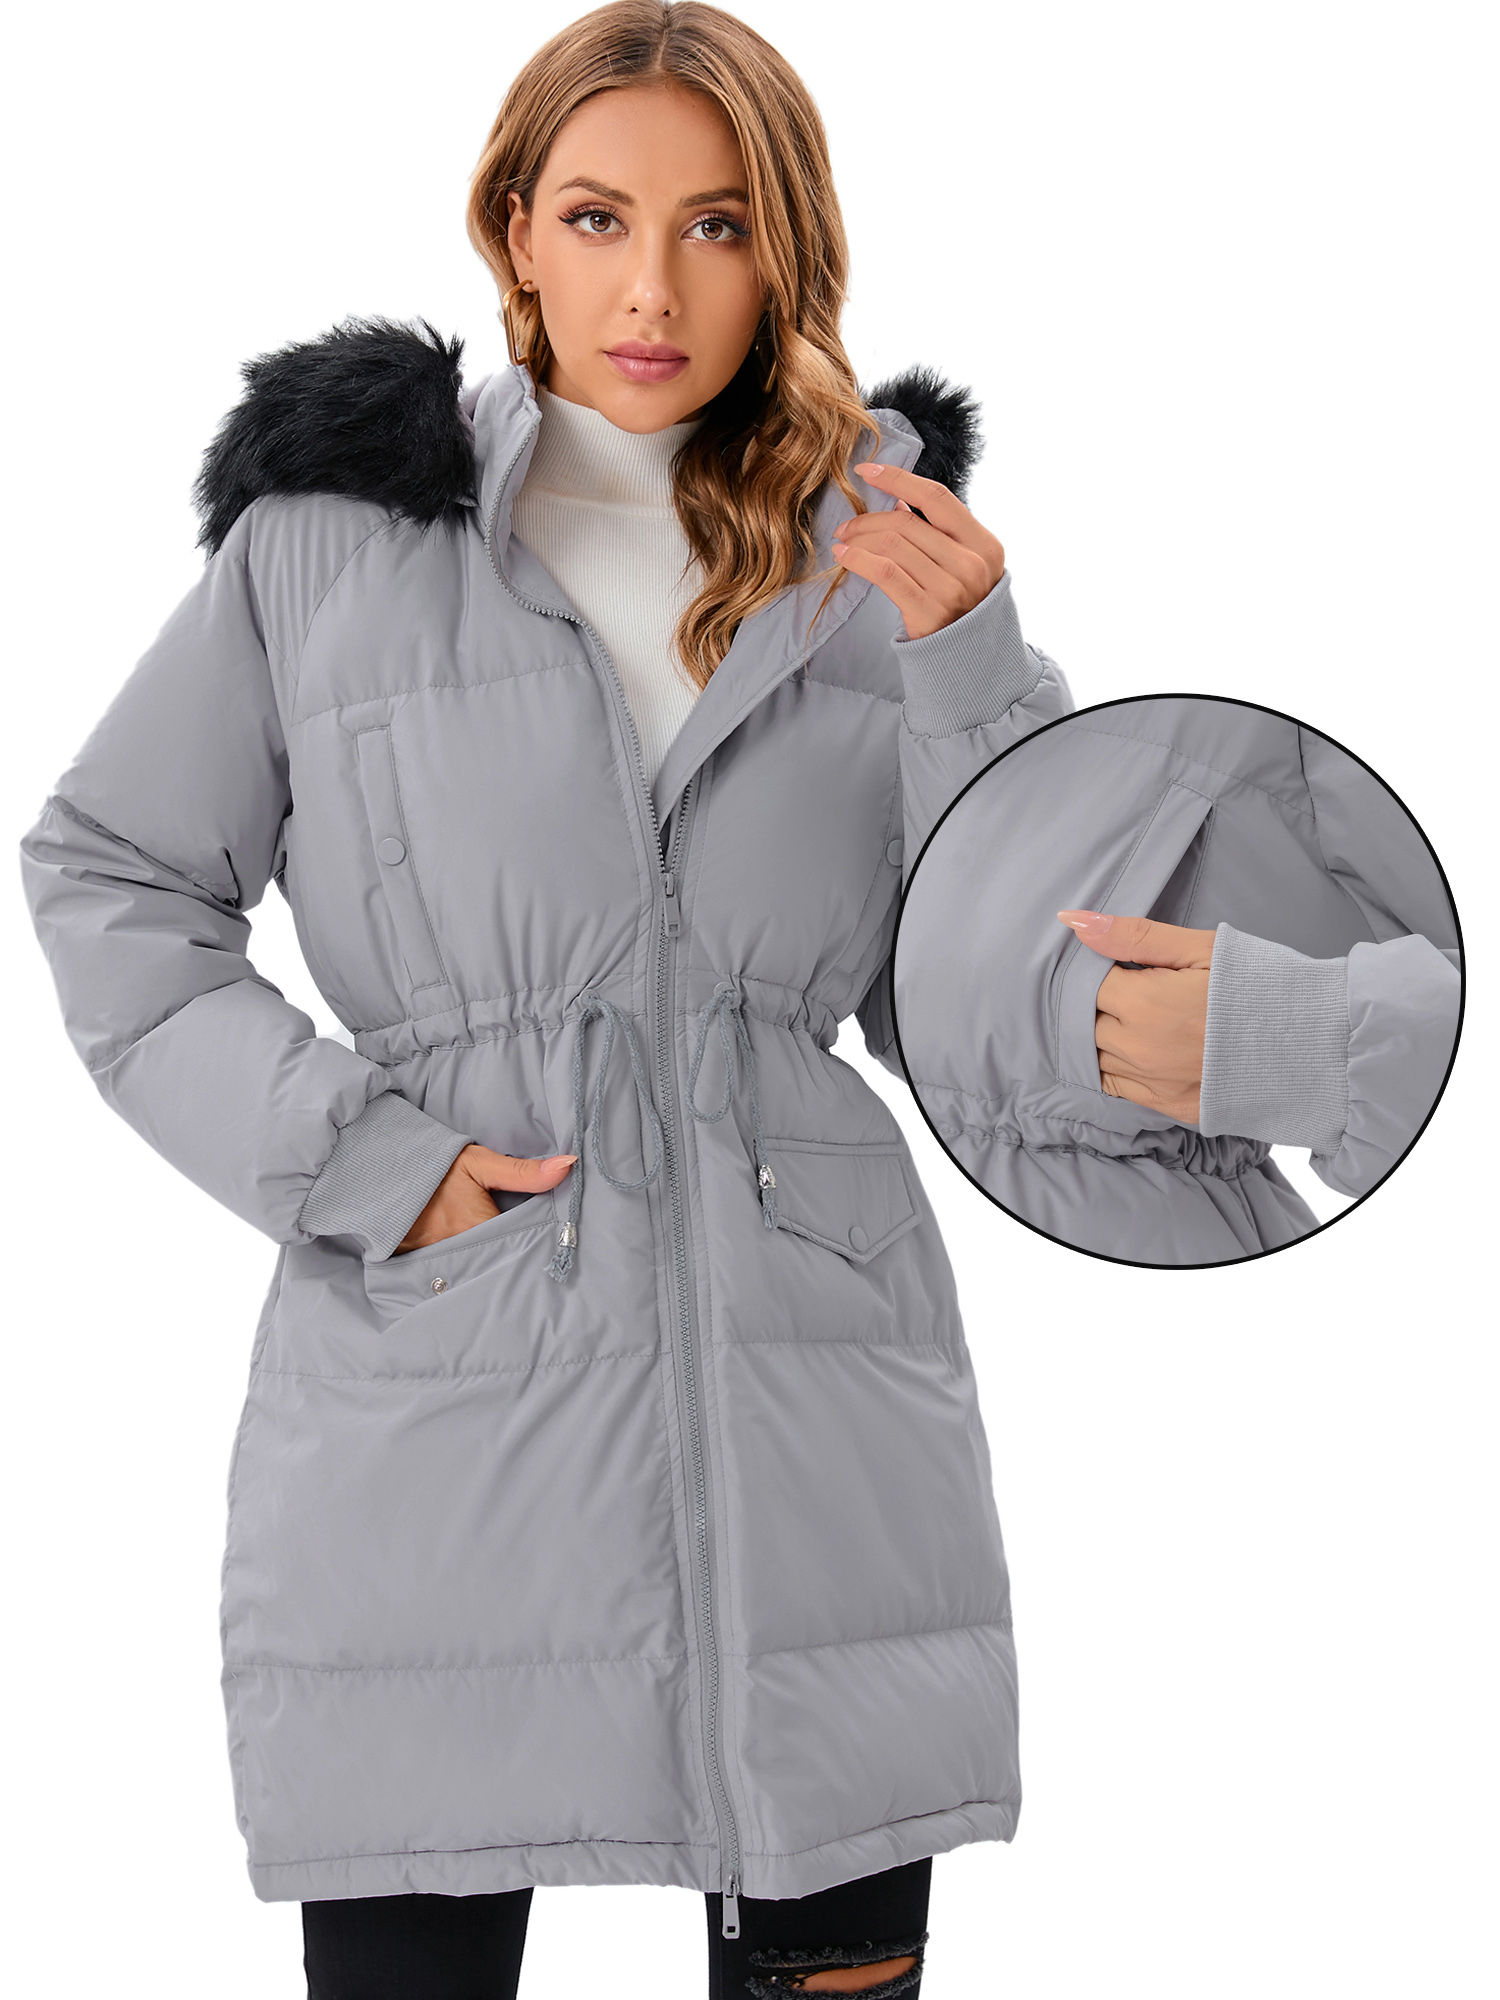 LELINTA Women's Long Winter Warm Puffer Coat Vegan Down Jacket Waterproof Rain Zip Parka, Camouflage - image 3 of 7